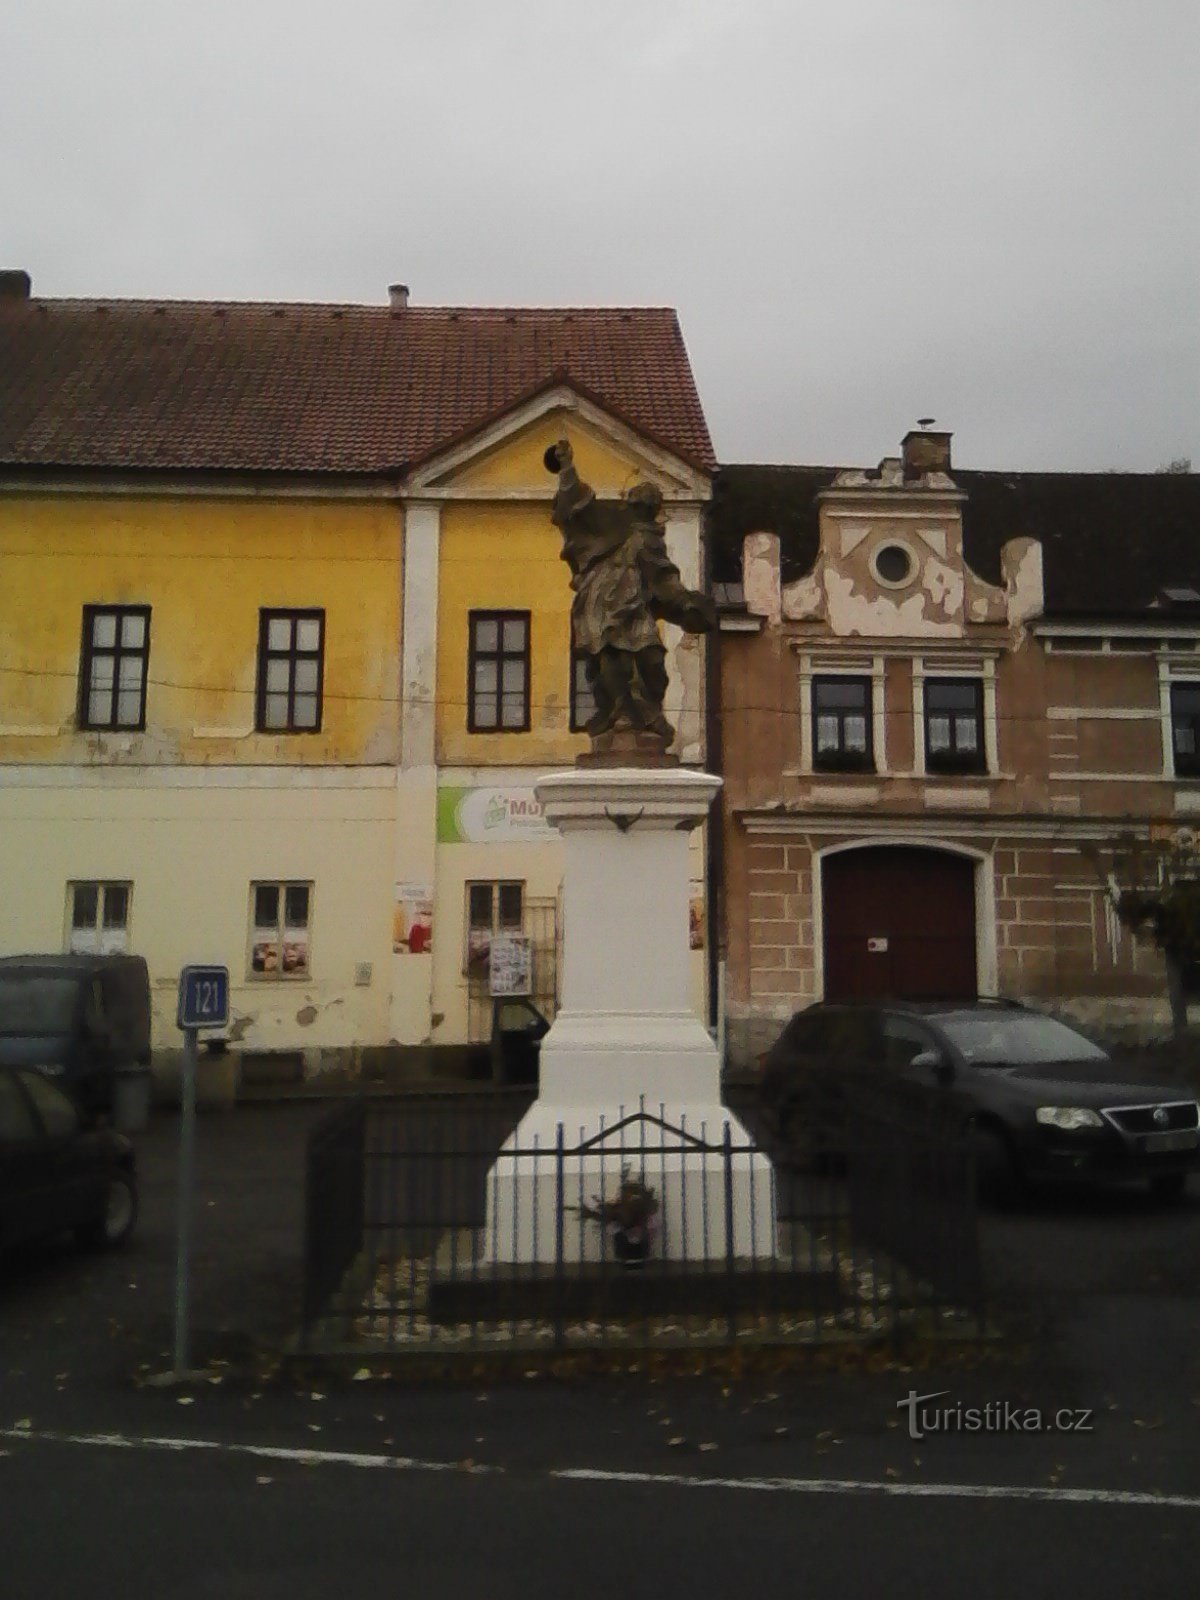 2. Standbeeld van St. Johannes van Nepomuk in Sedlec.